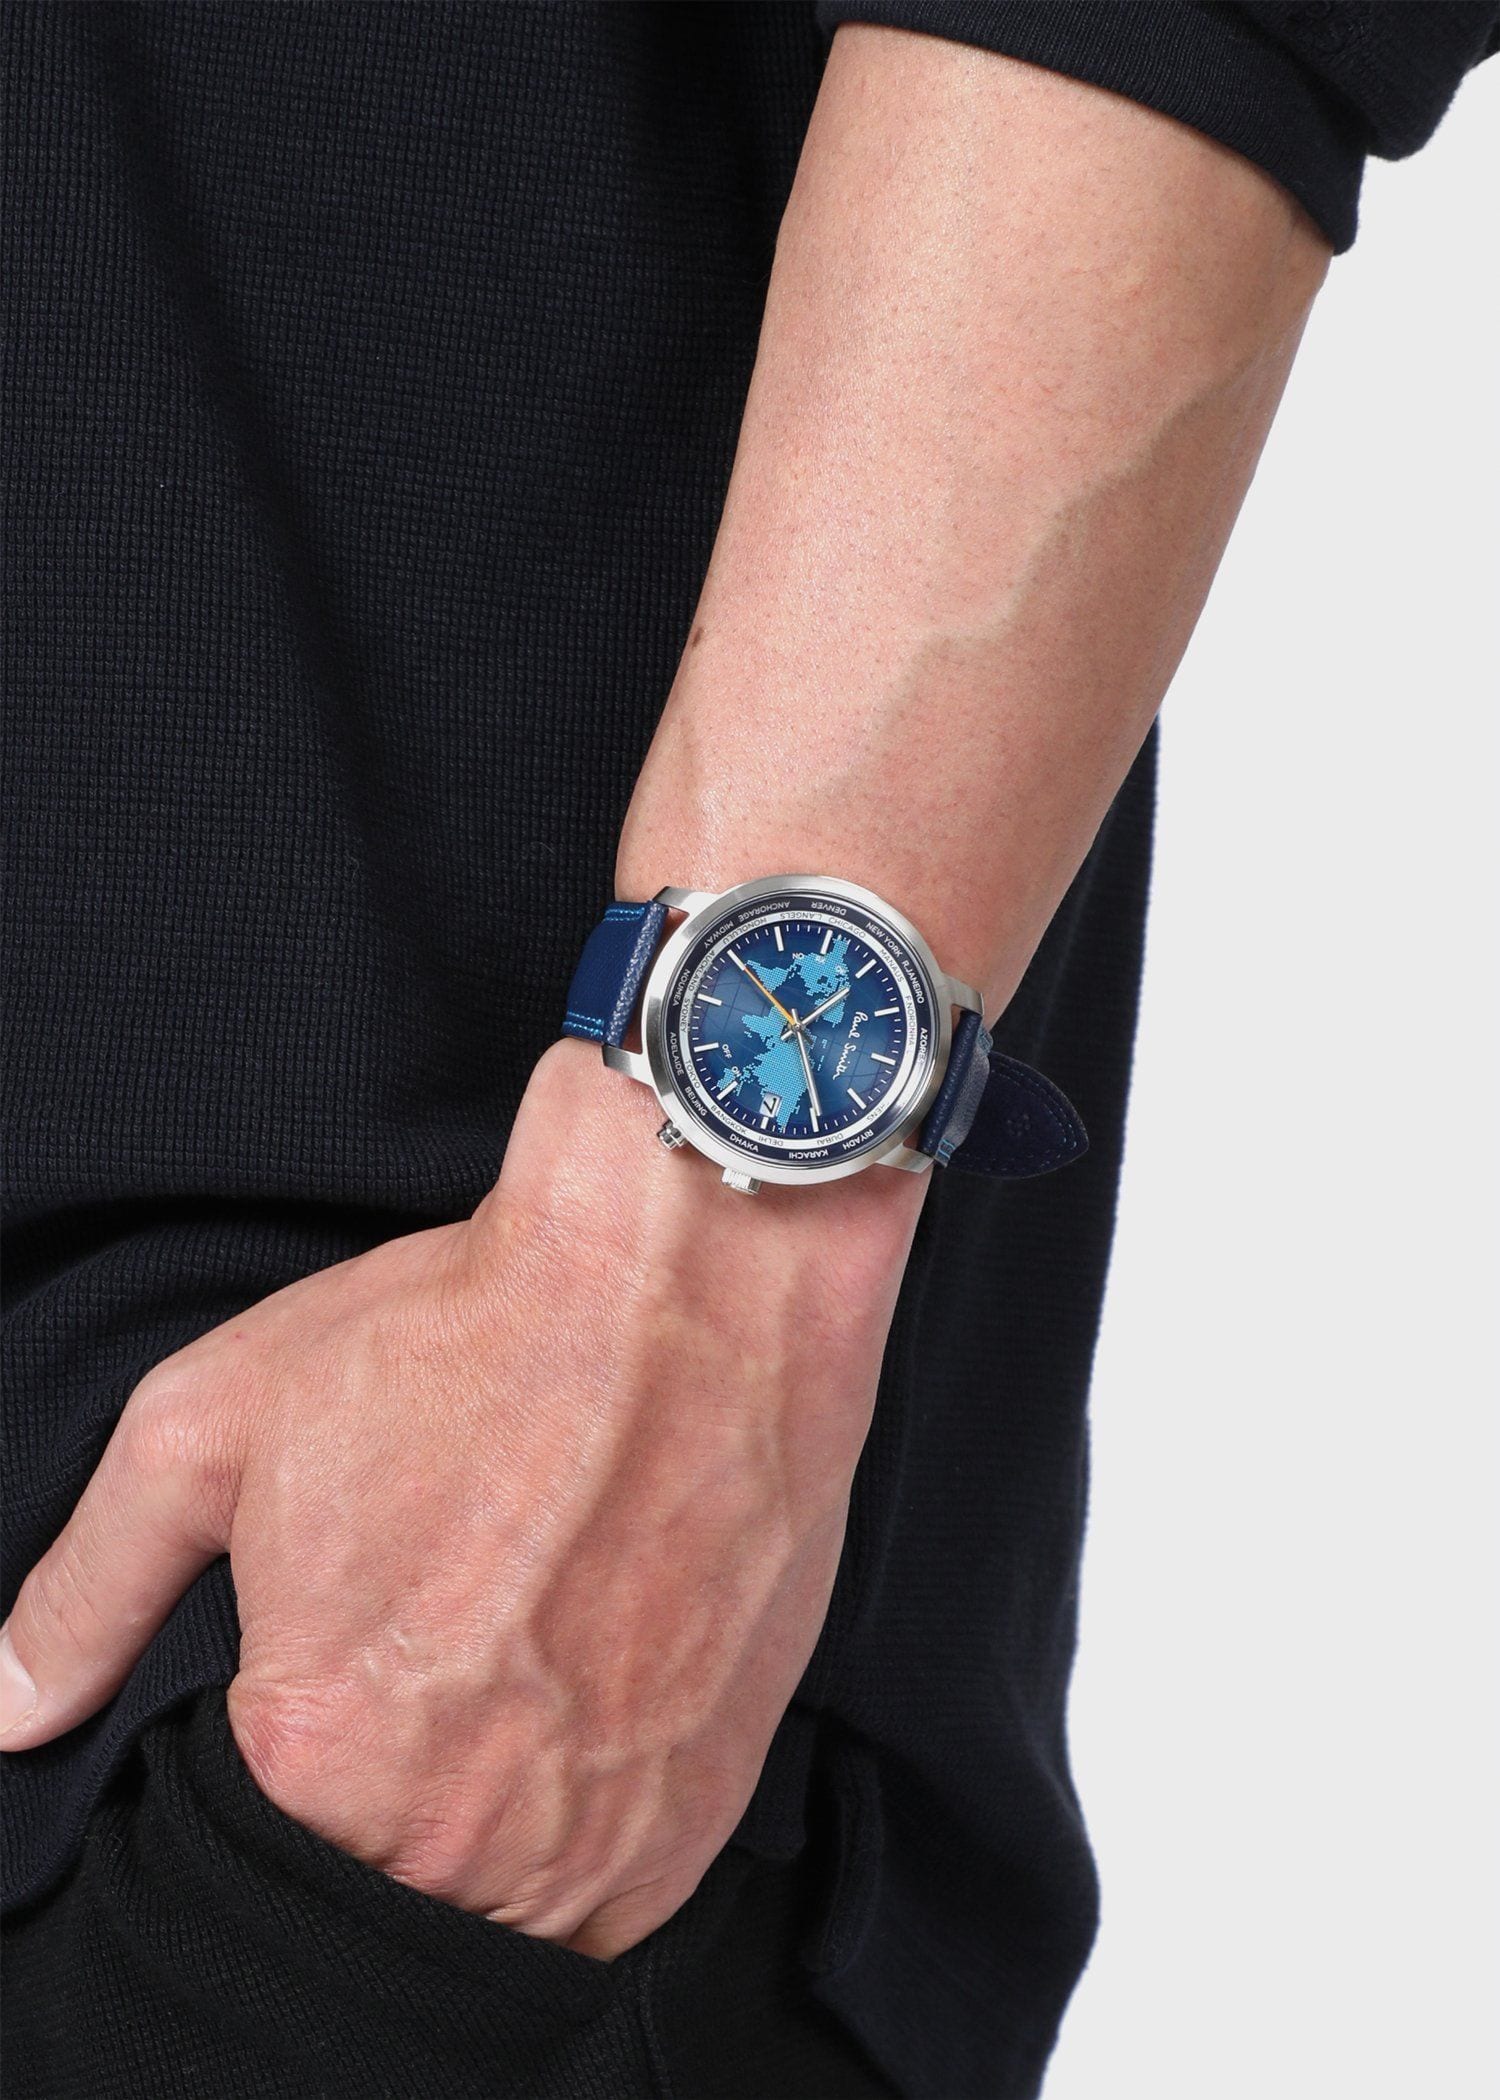 保証書【新品未使用】ポールスミス 腕時計 World Traveller